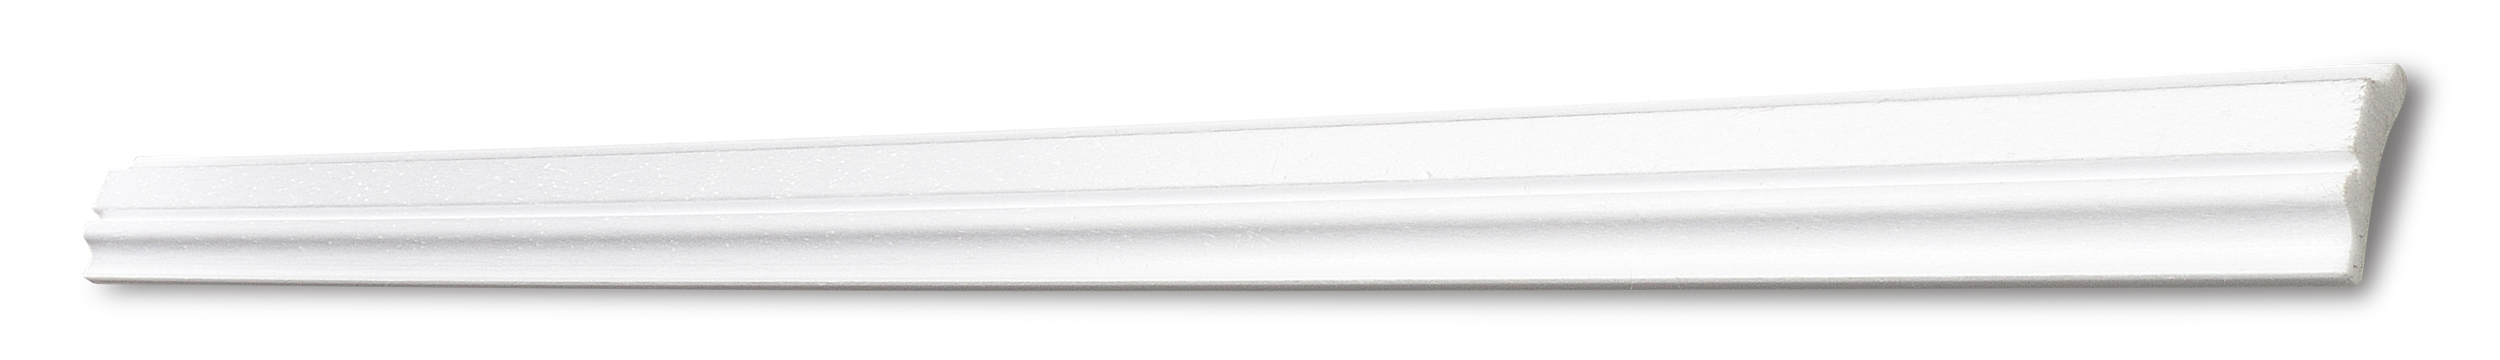 DECOSA Cimaise Marlene - polystyrène extra dur - blanc - 31 mm - longueur 2 m